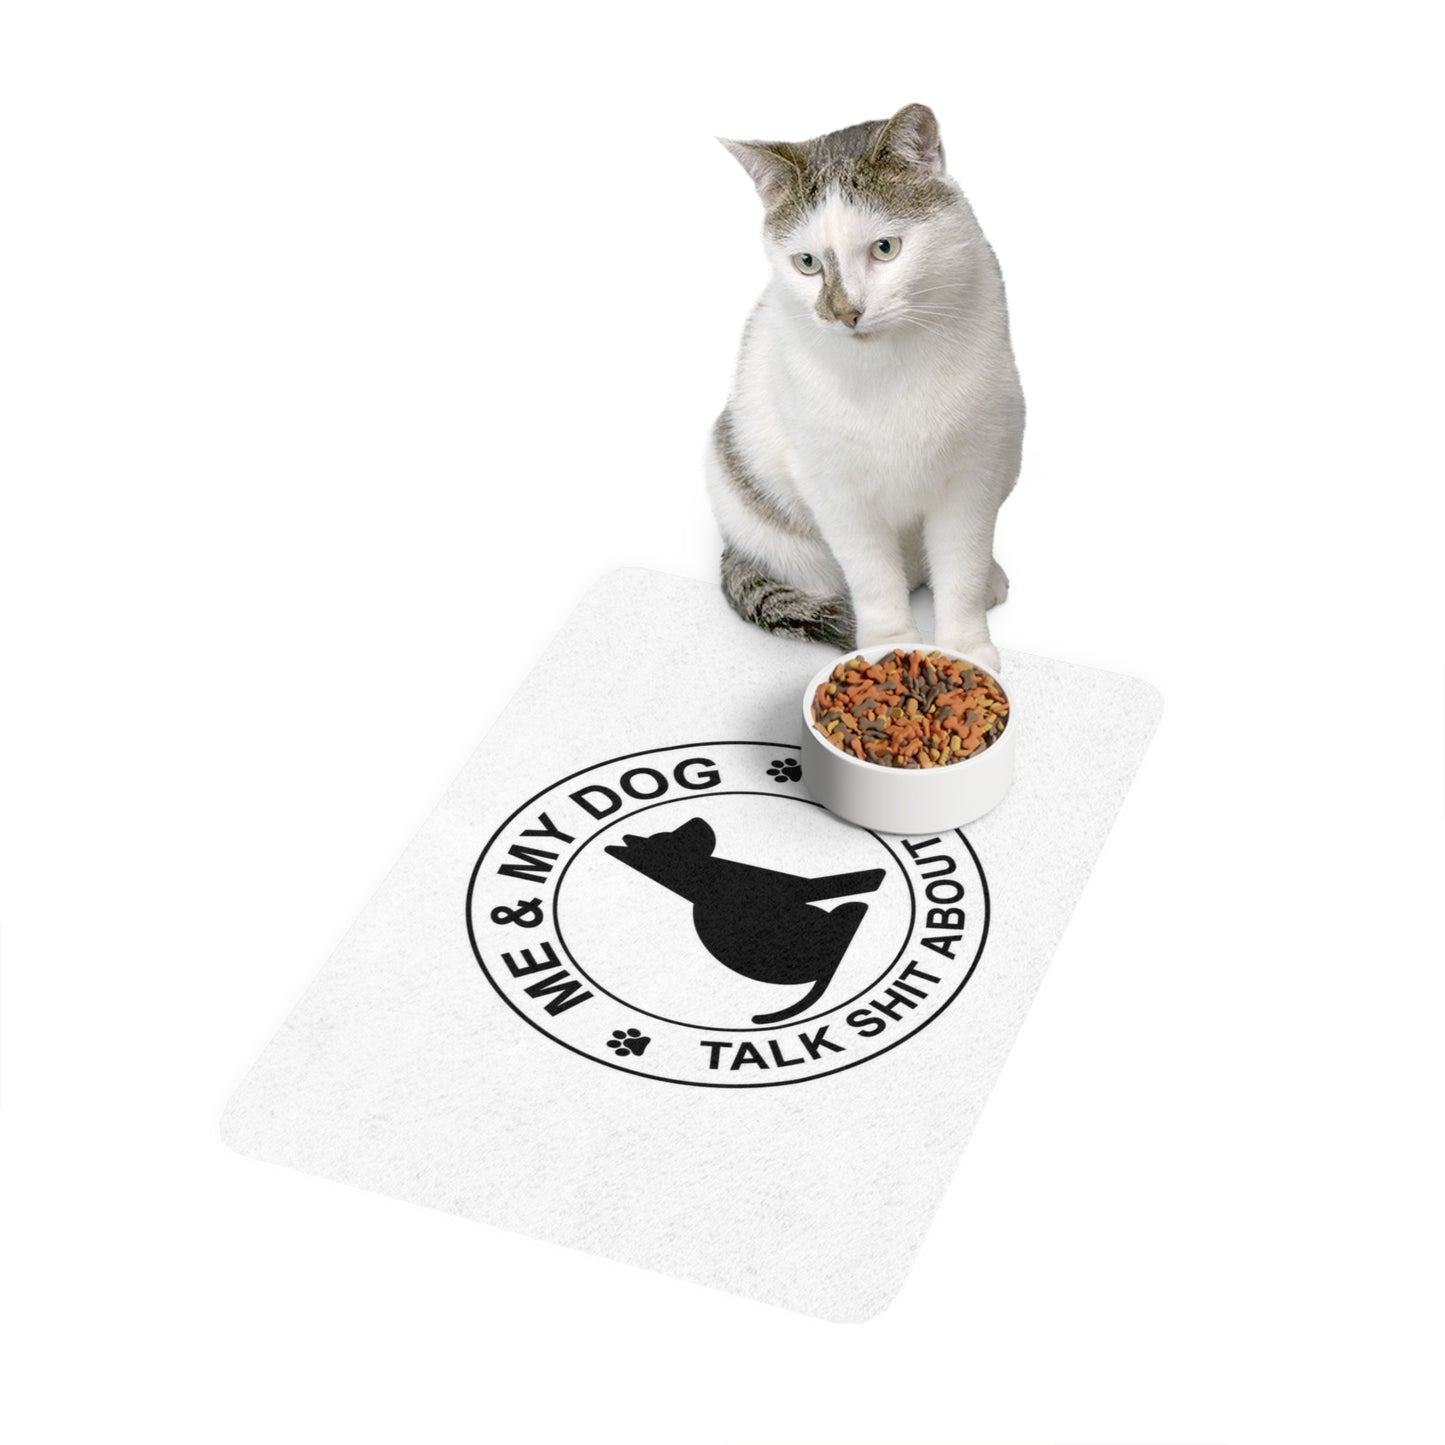 Pet Food Mat (12x18)